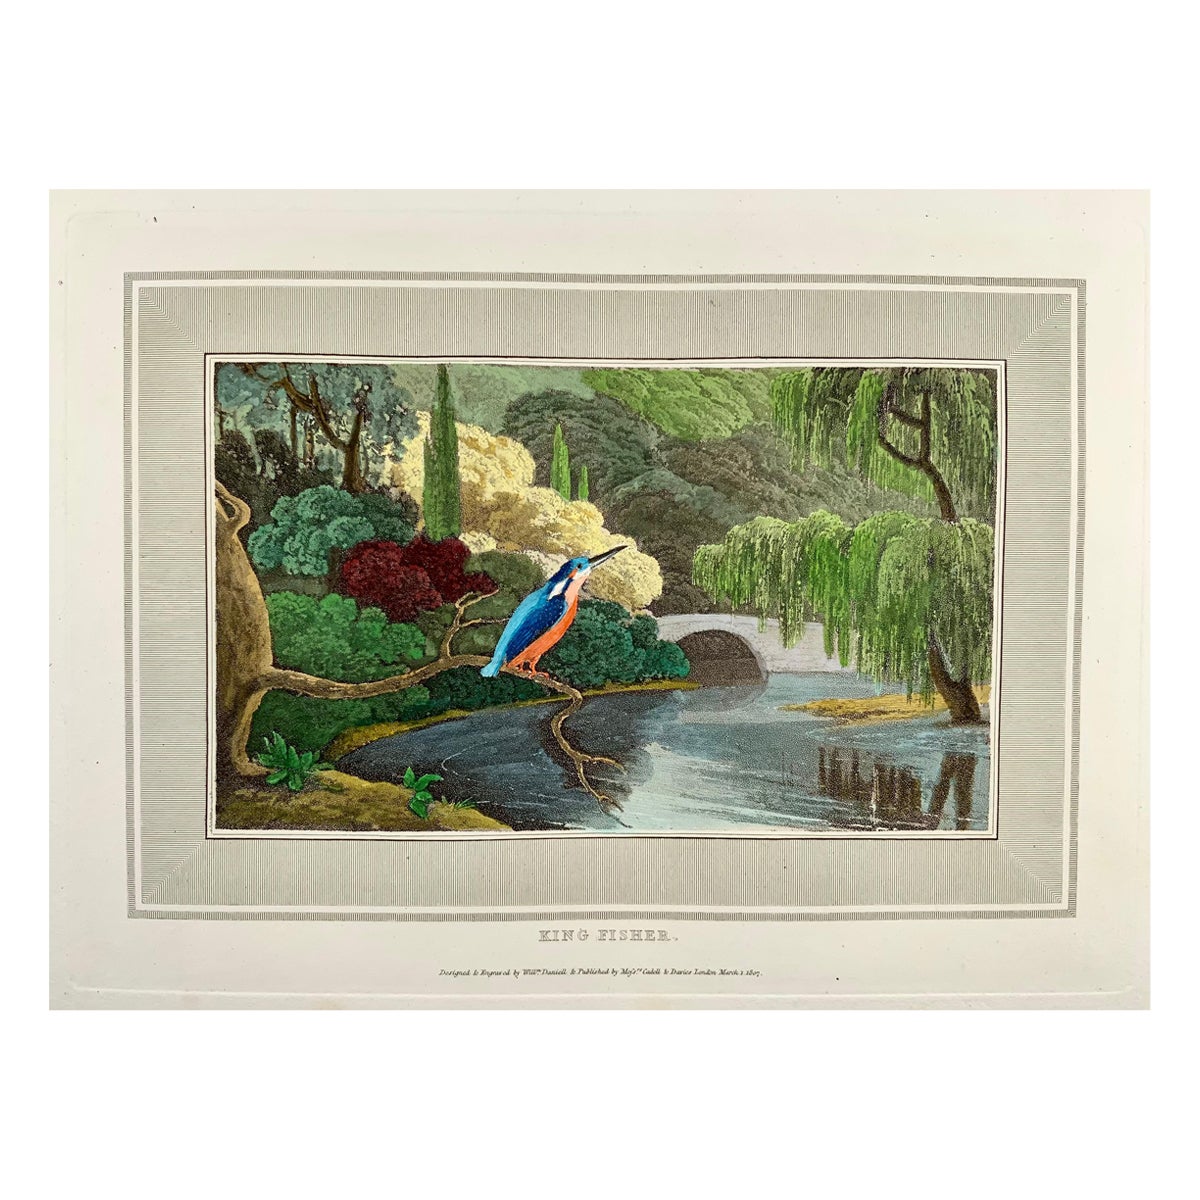 William Daniell, pêcheur de roi, ornithologie, aquatinte colorée à la main, 1807